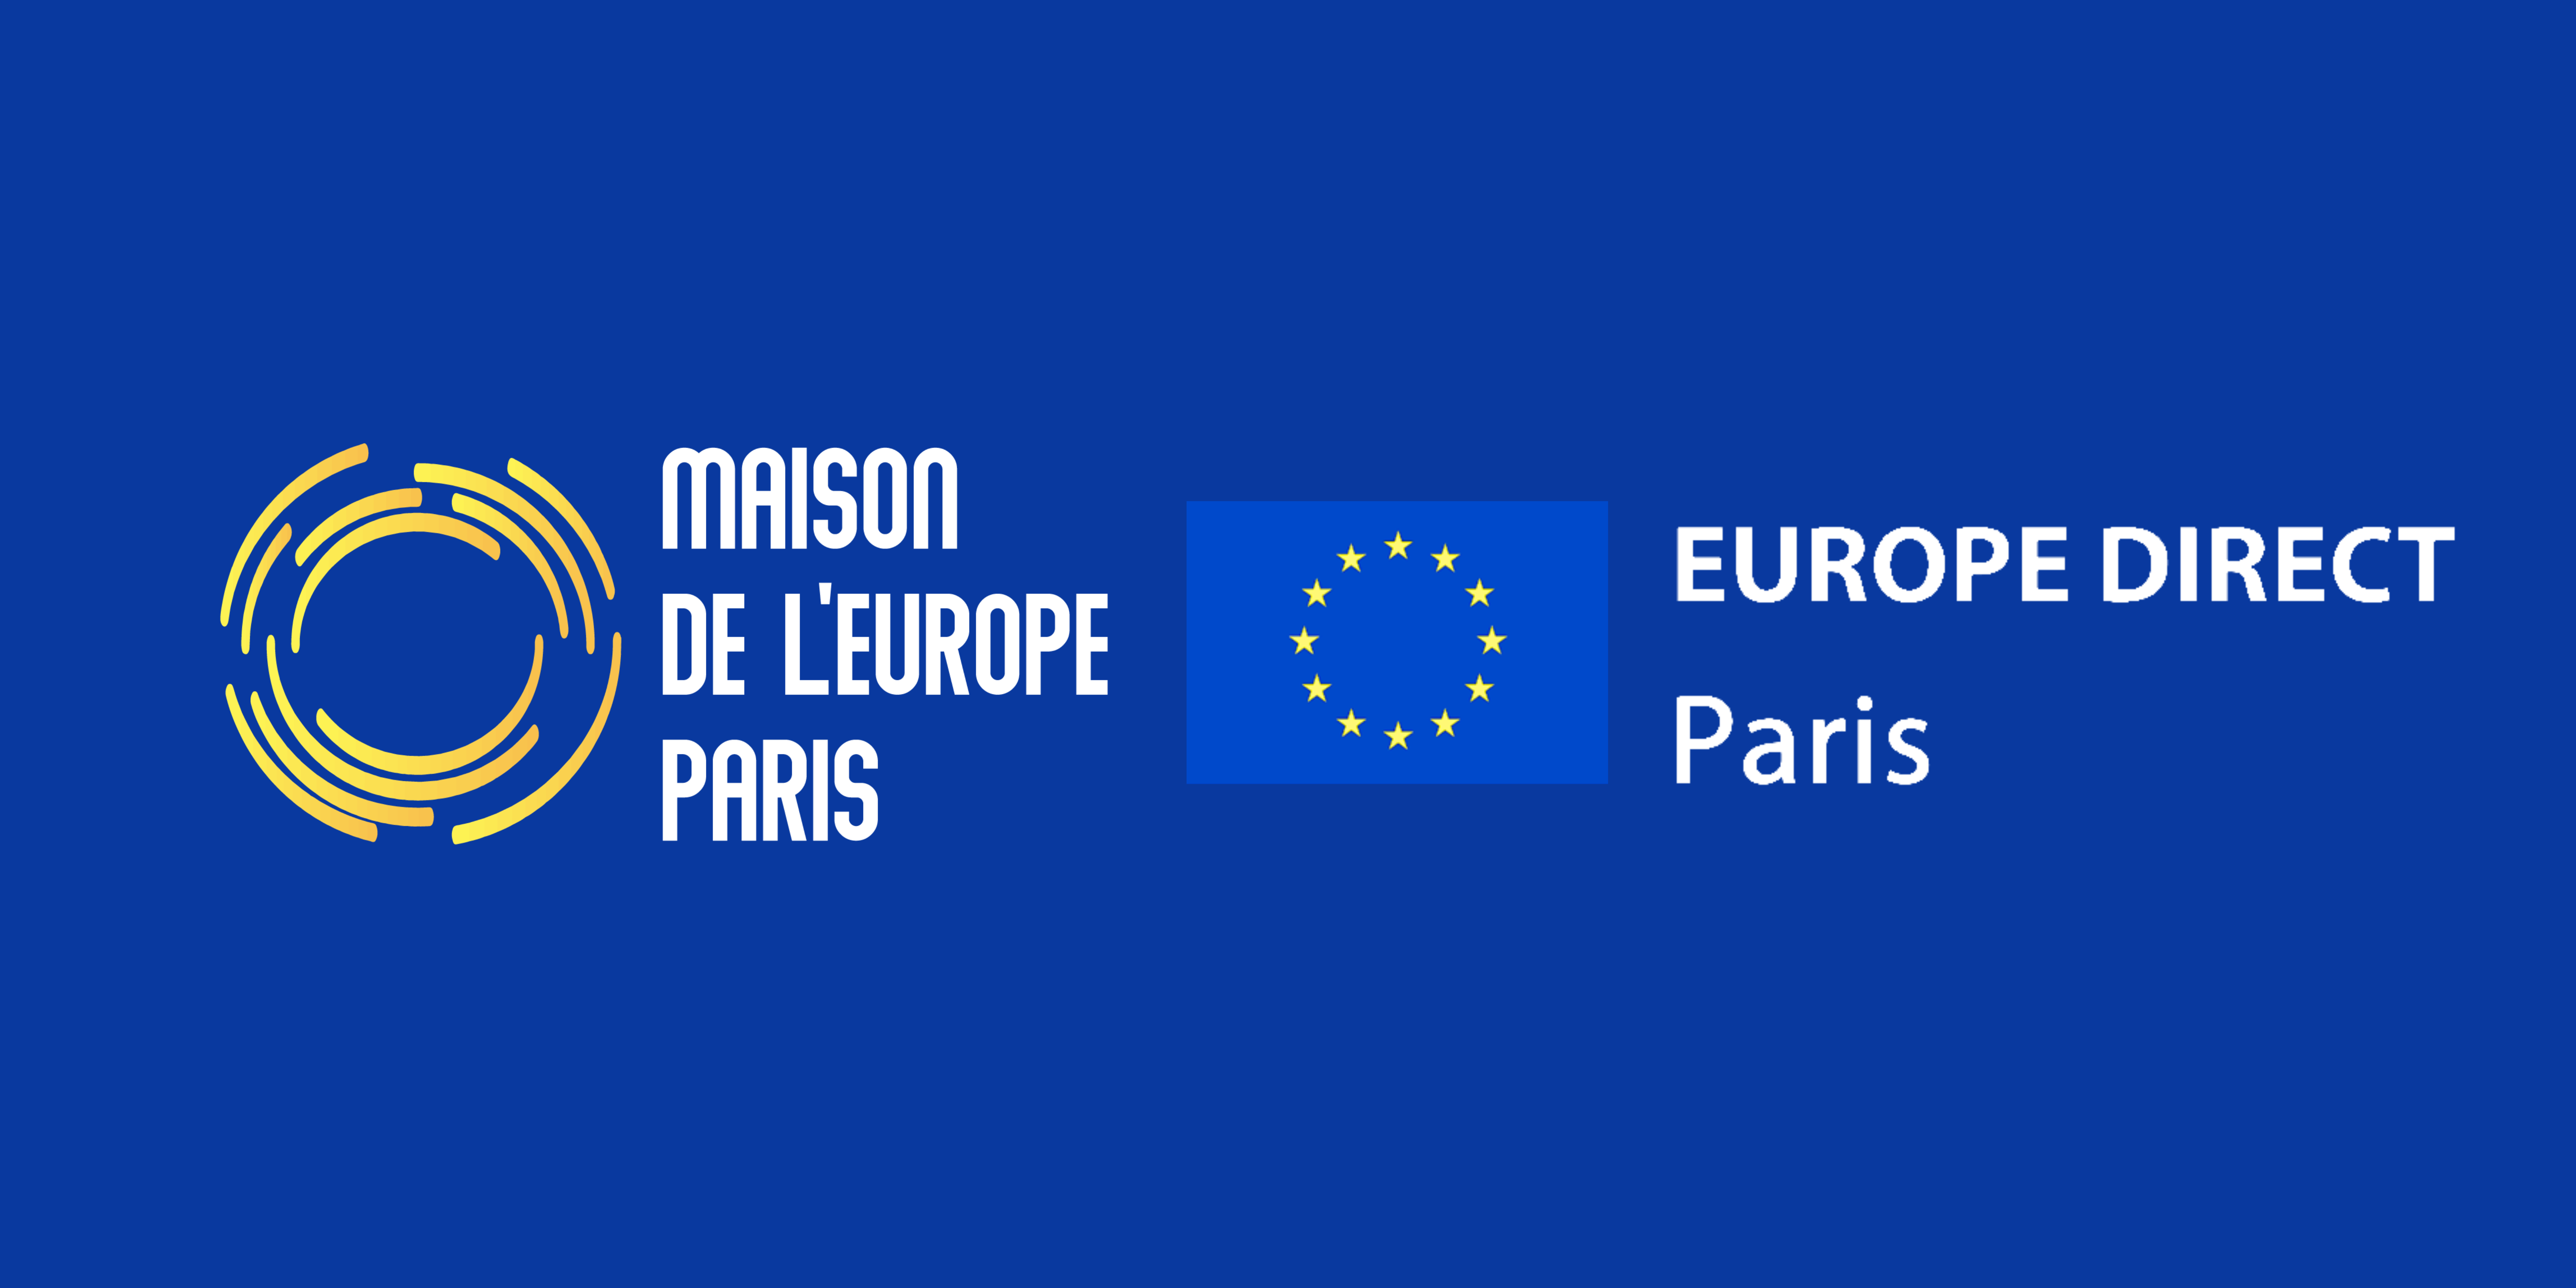 Maison de l'Europe de Paris / Europe Direct Paris